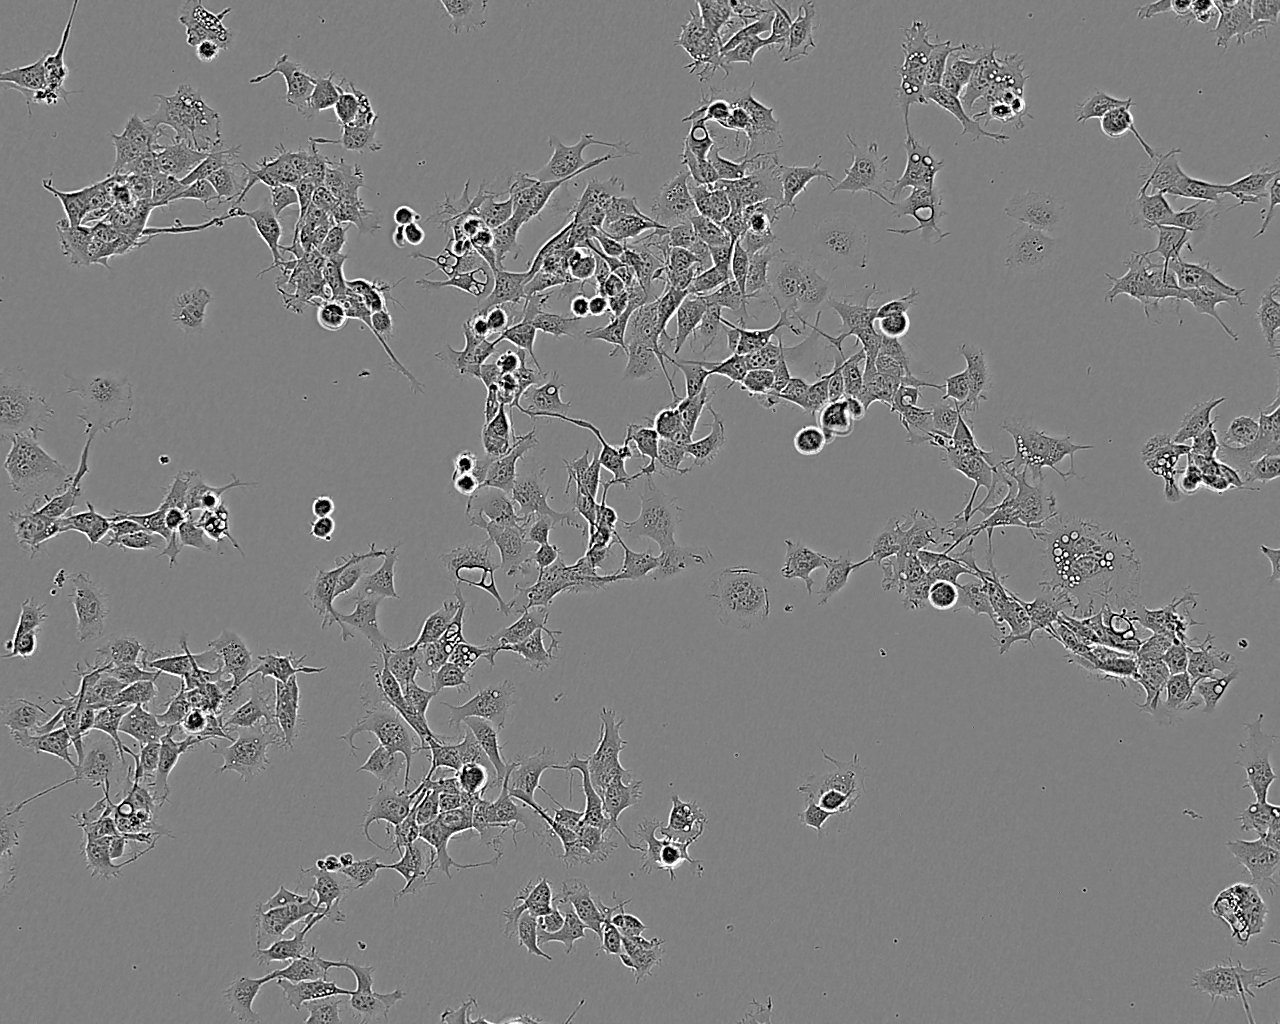 COR-L105细胞：人原发性非小细胞肺癌细胞系